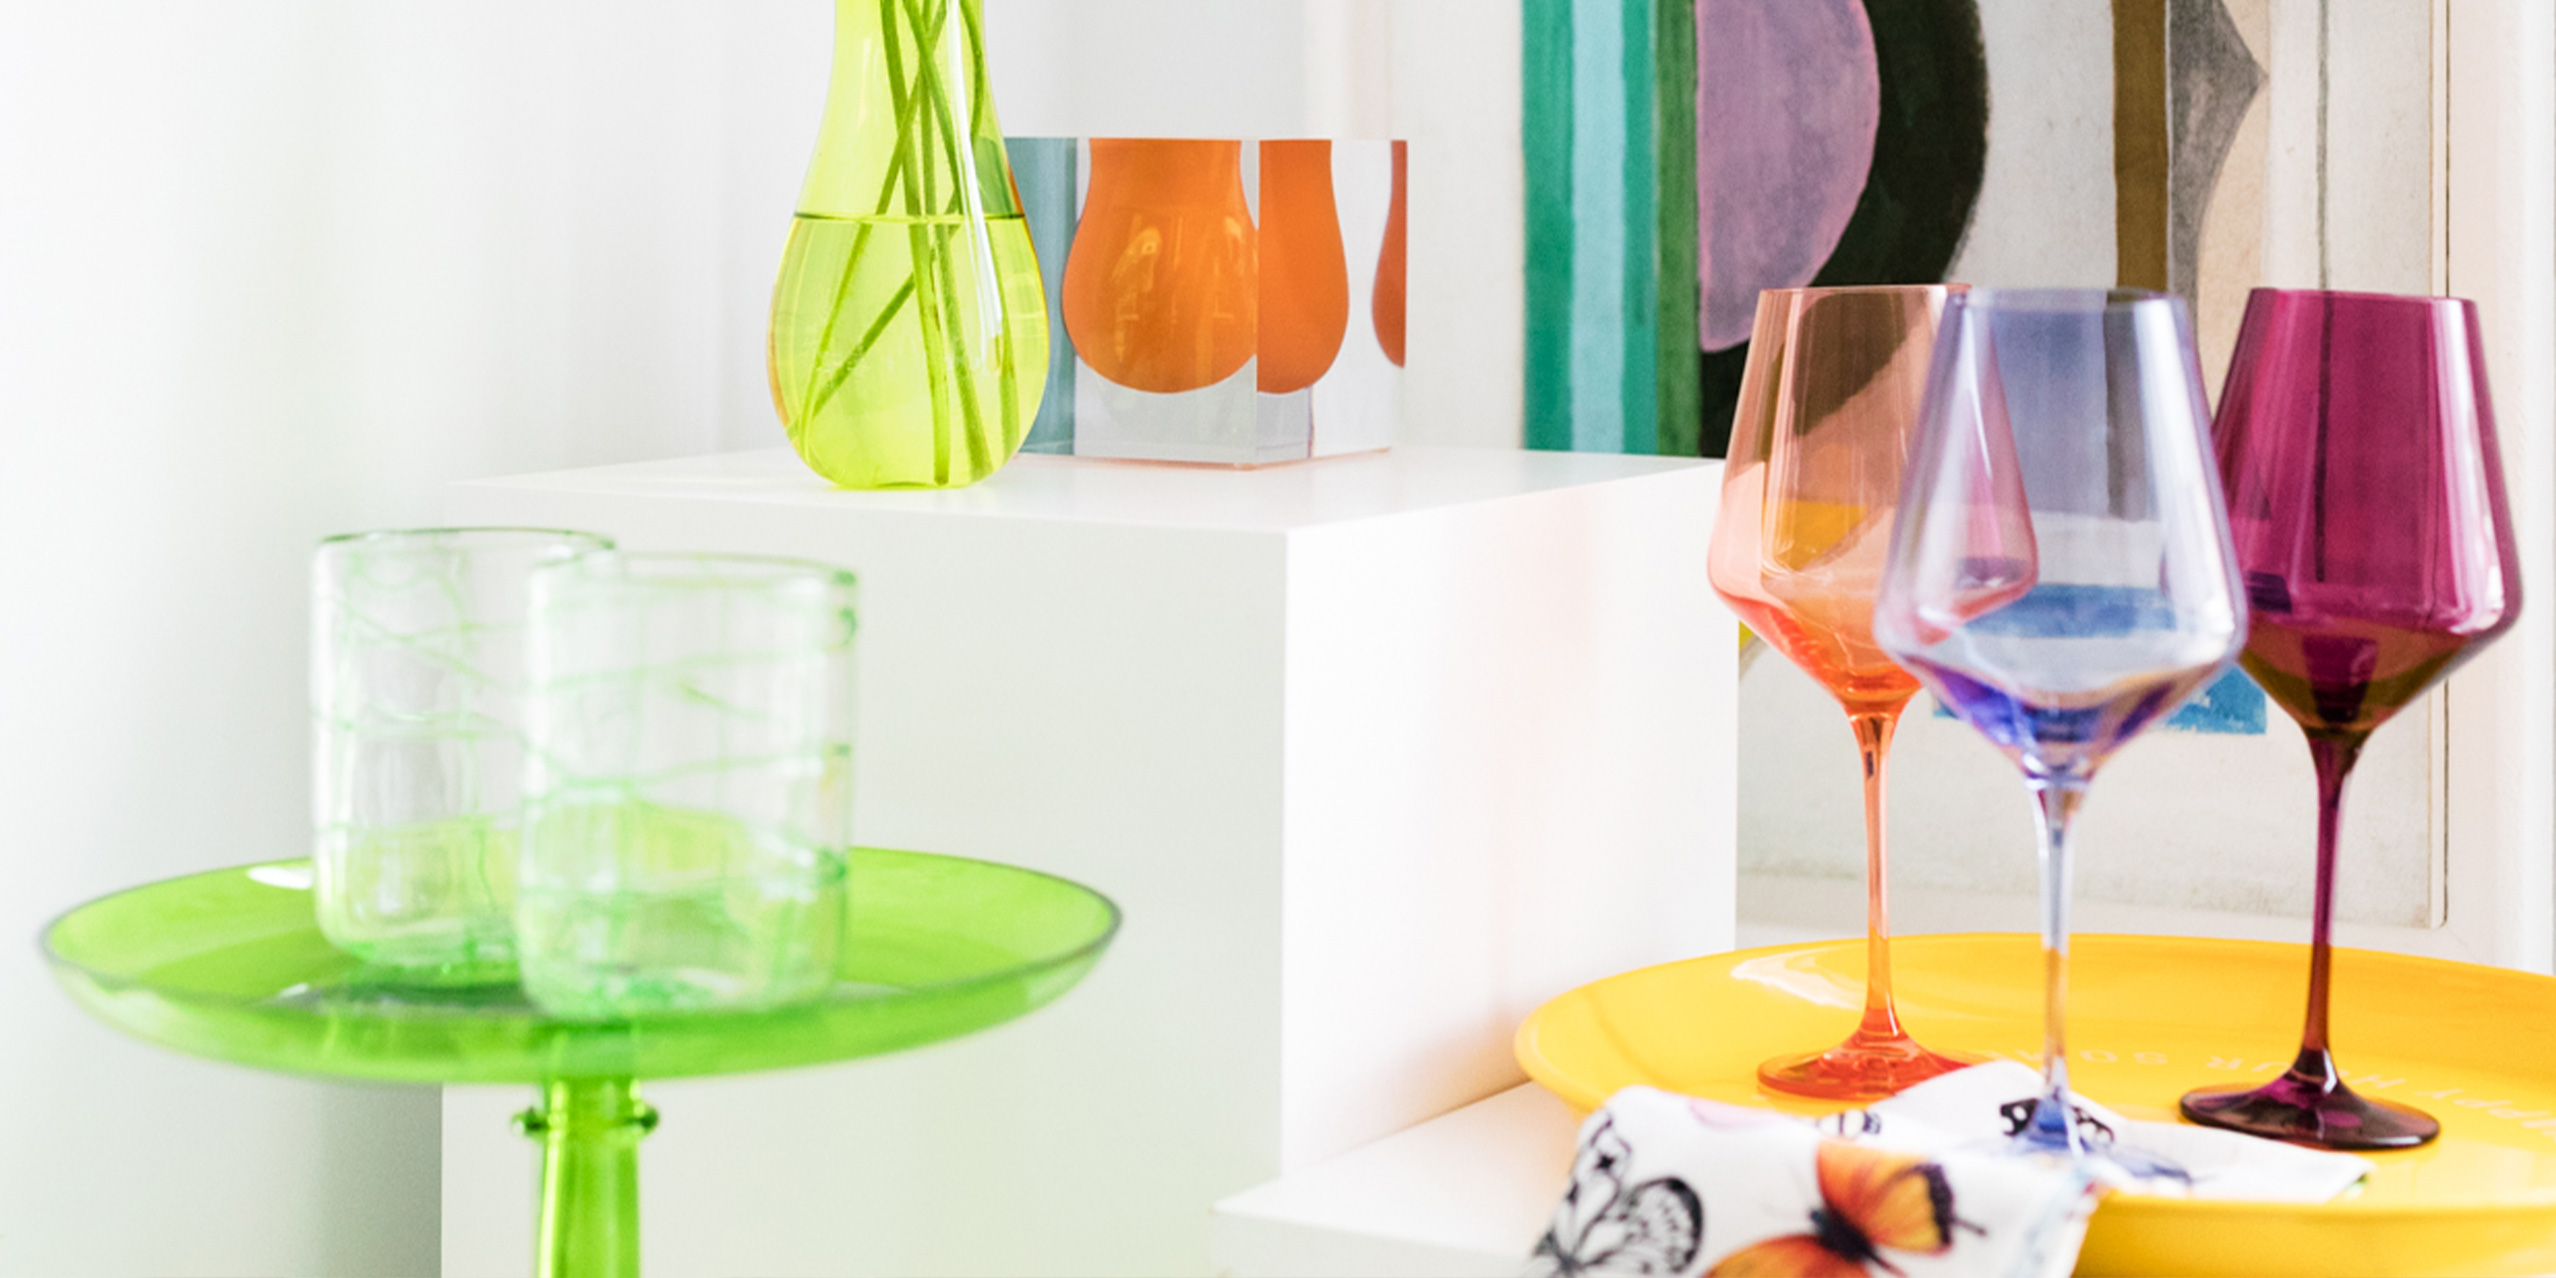 Stemware Wine – Estelle Colored Glass